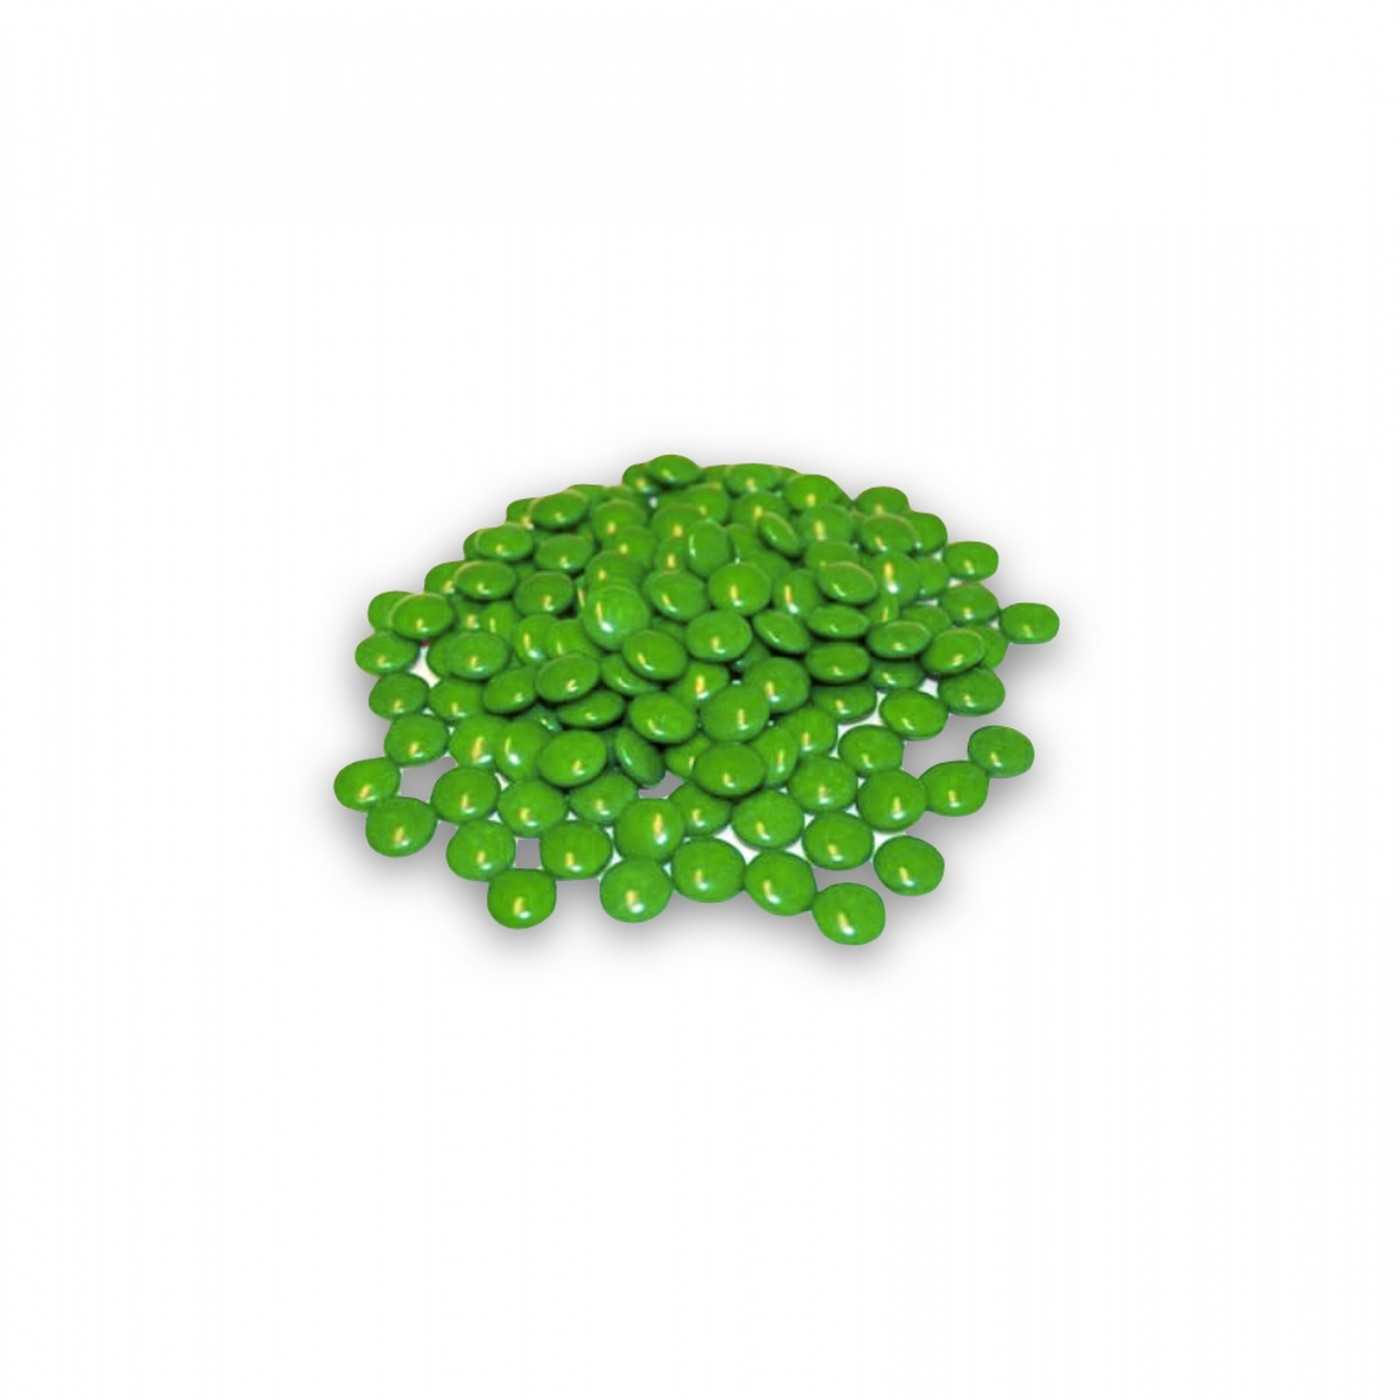 ChocLentilles groen 1kg